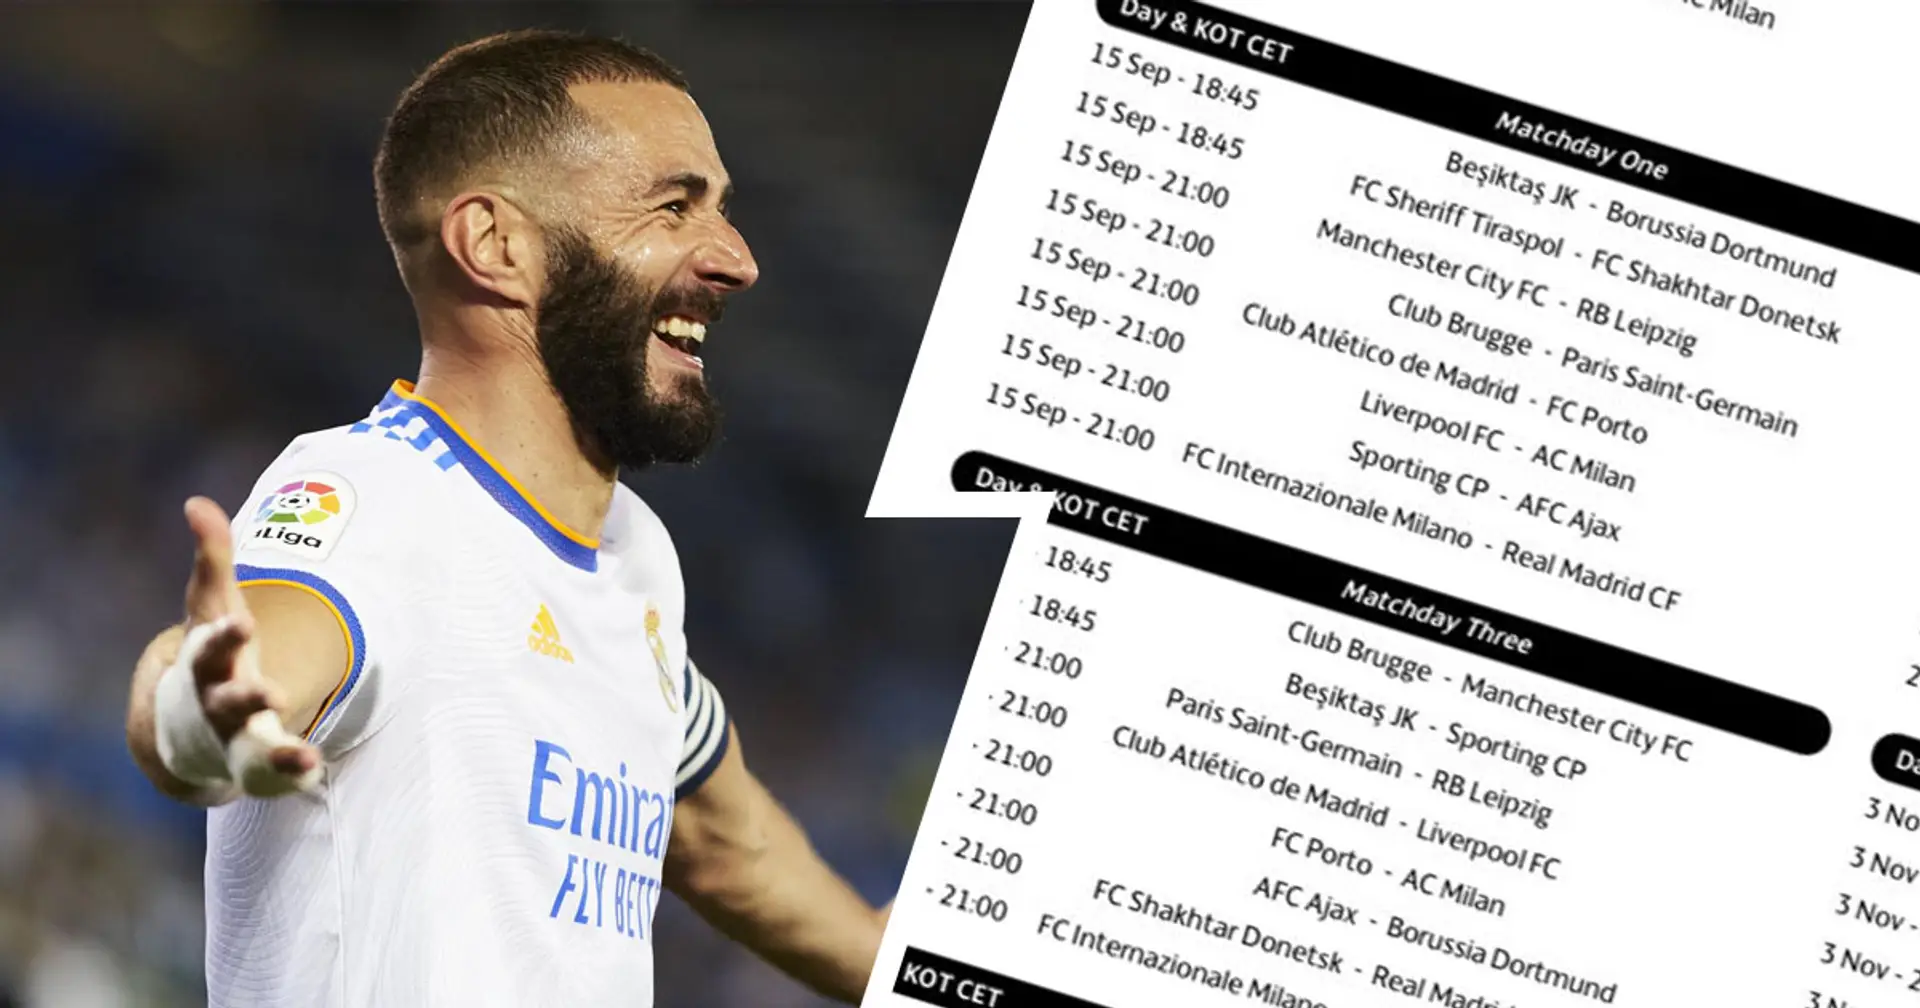 Primer partido en casa vs Inter de Milán: revelado el calendario del Real Madrid de la Champions